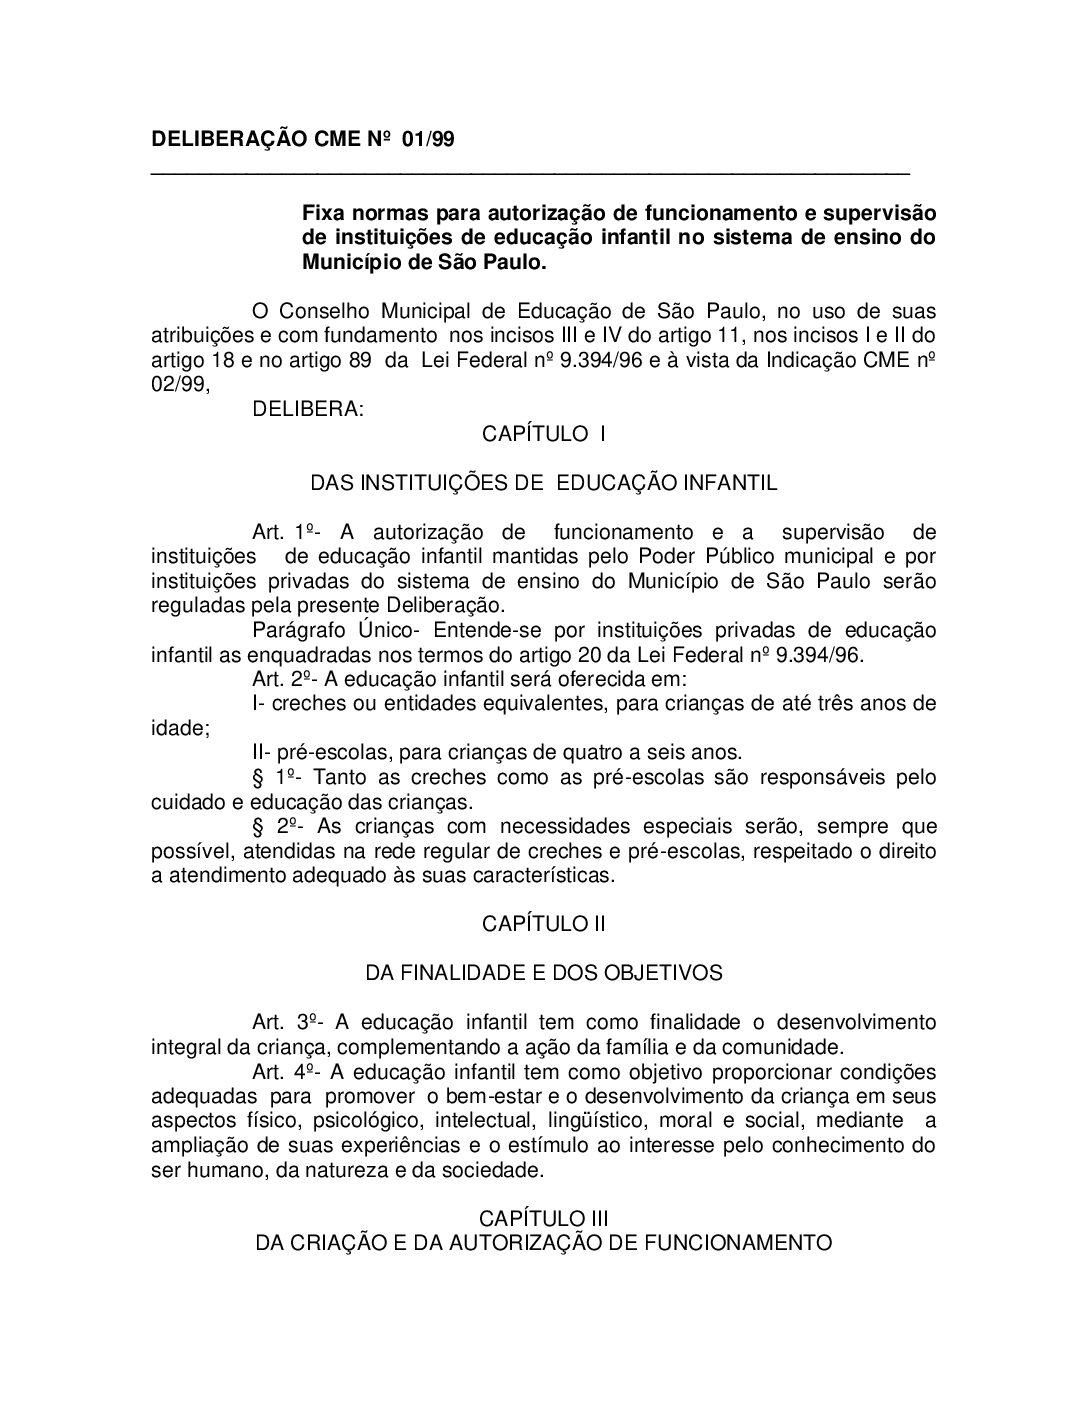 Deliberação CME nº 01/1999 - Fixa normas para autorização de funcionamento e supervisão de instituições de educação infantil no sistema de ensino do Município de São Paulo